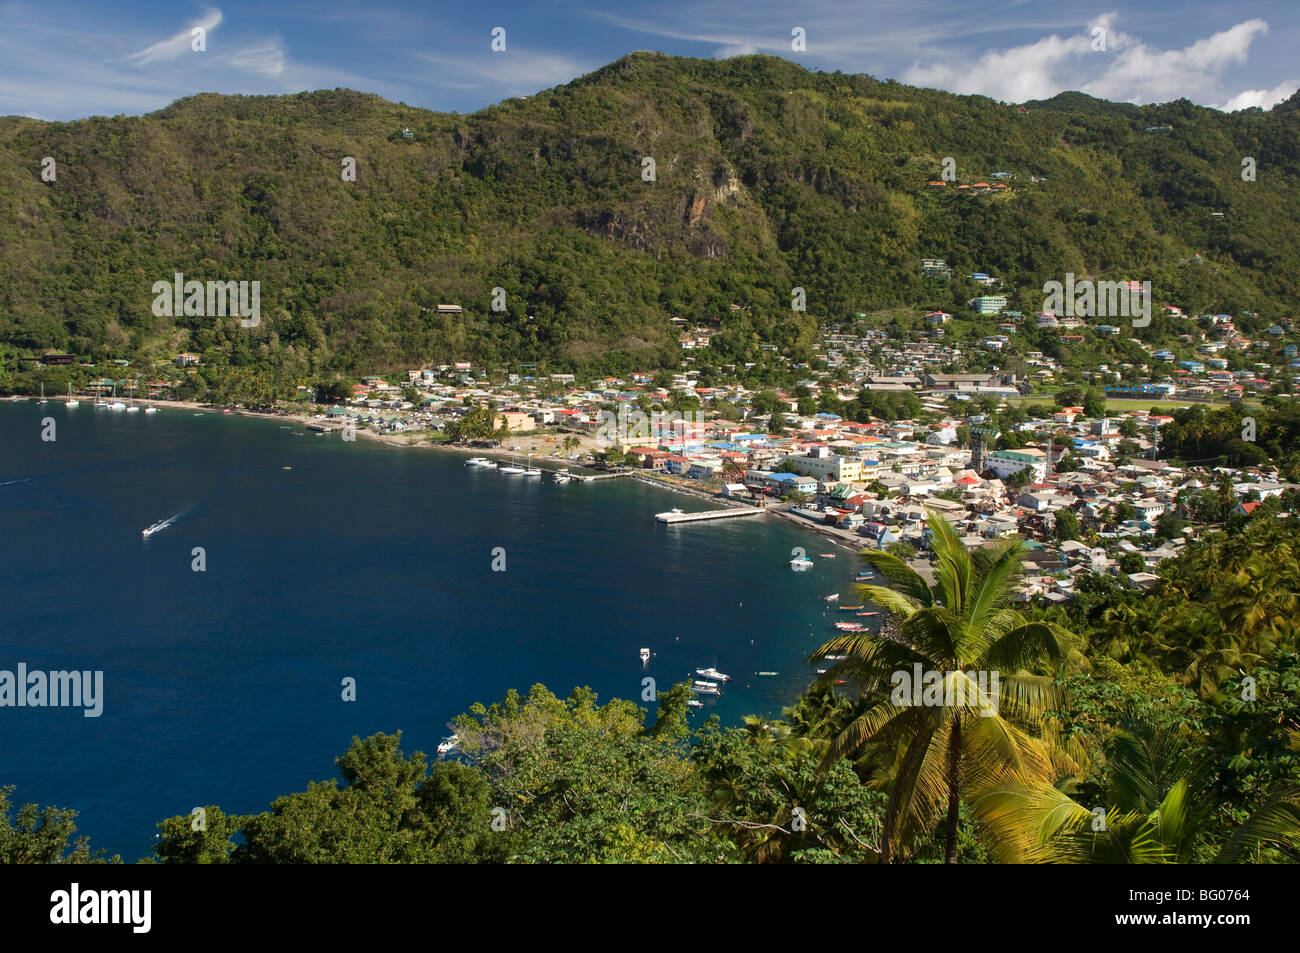 Une vue aérienne de la ville de Soufrière à Saintelucie, îles du Vent, Antilles, Caraïbes, Amérique Centrale Banque D'Images